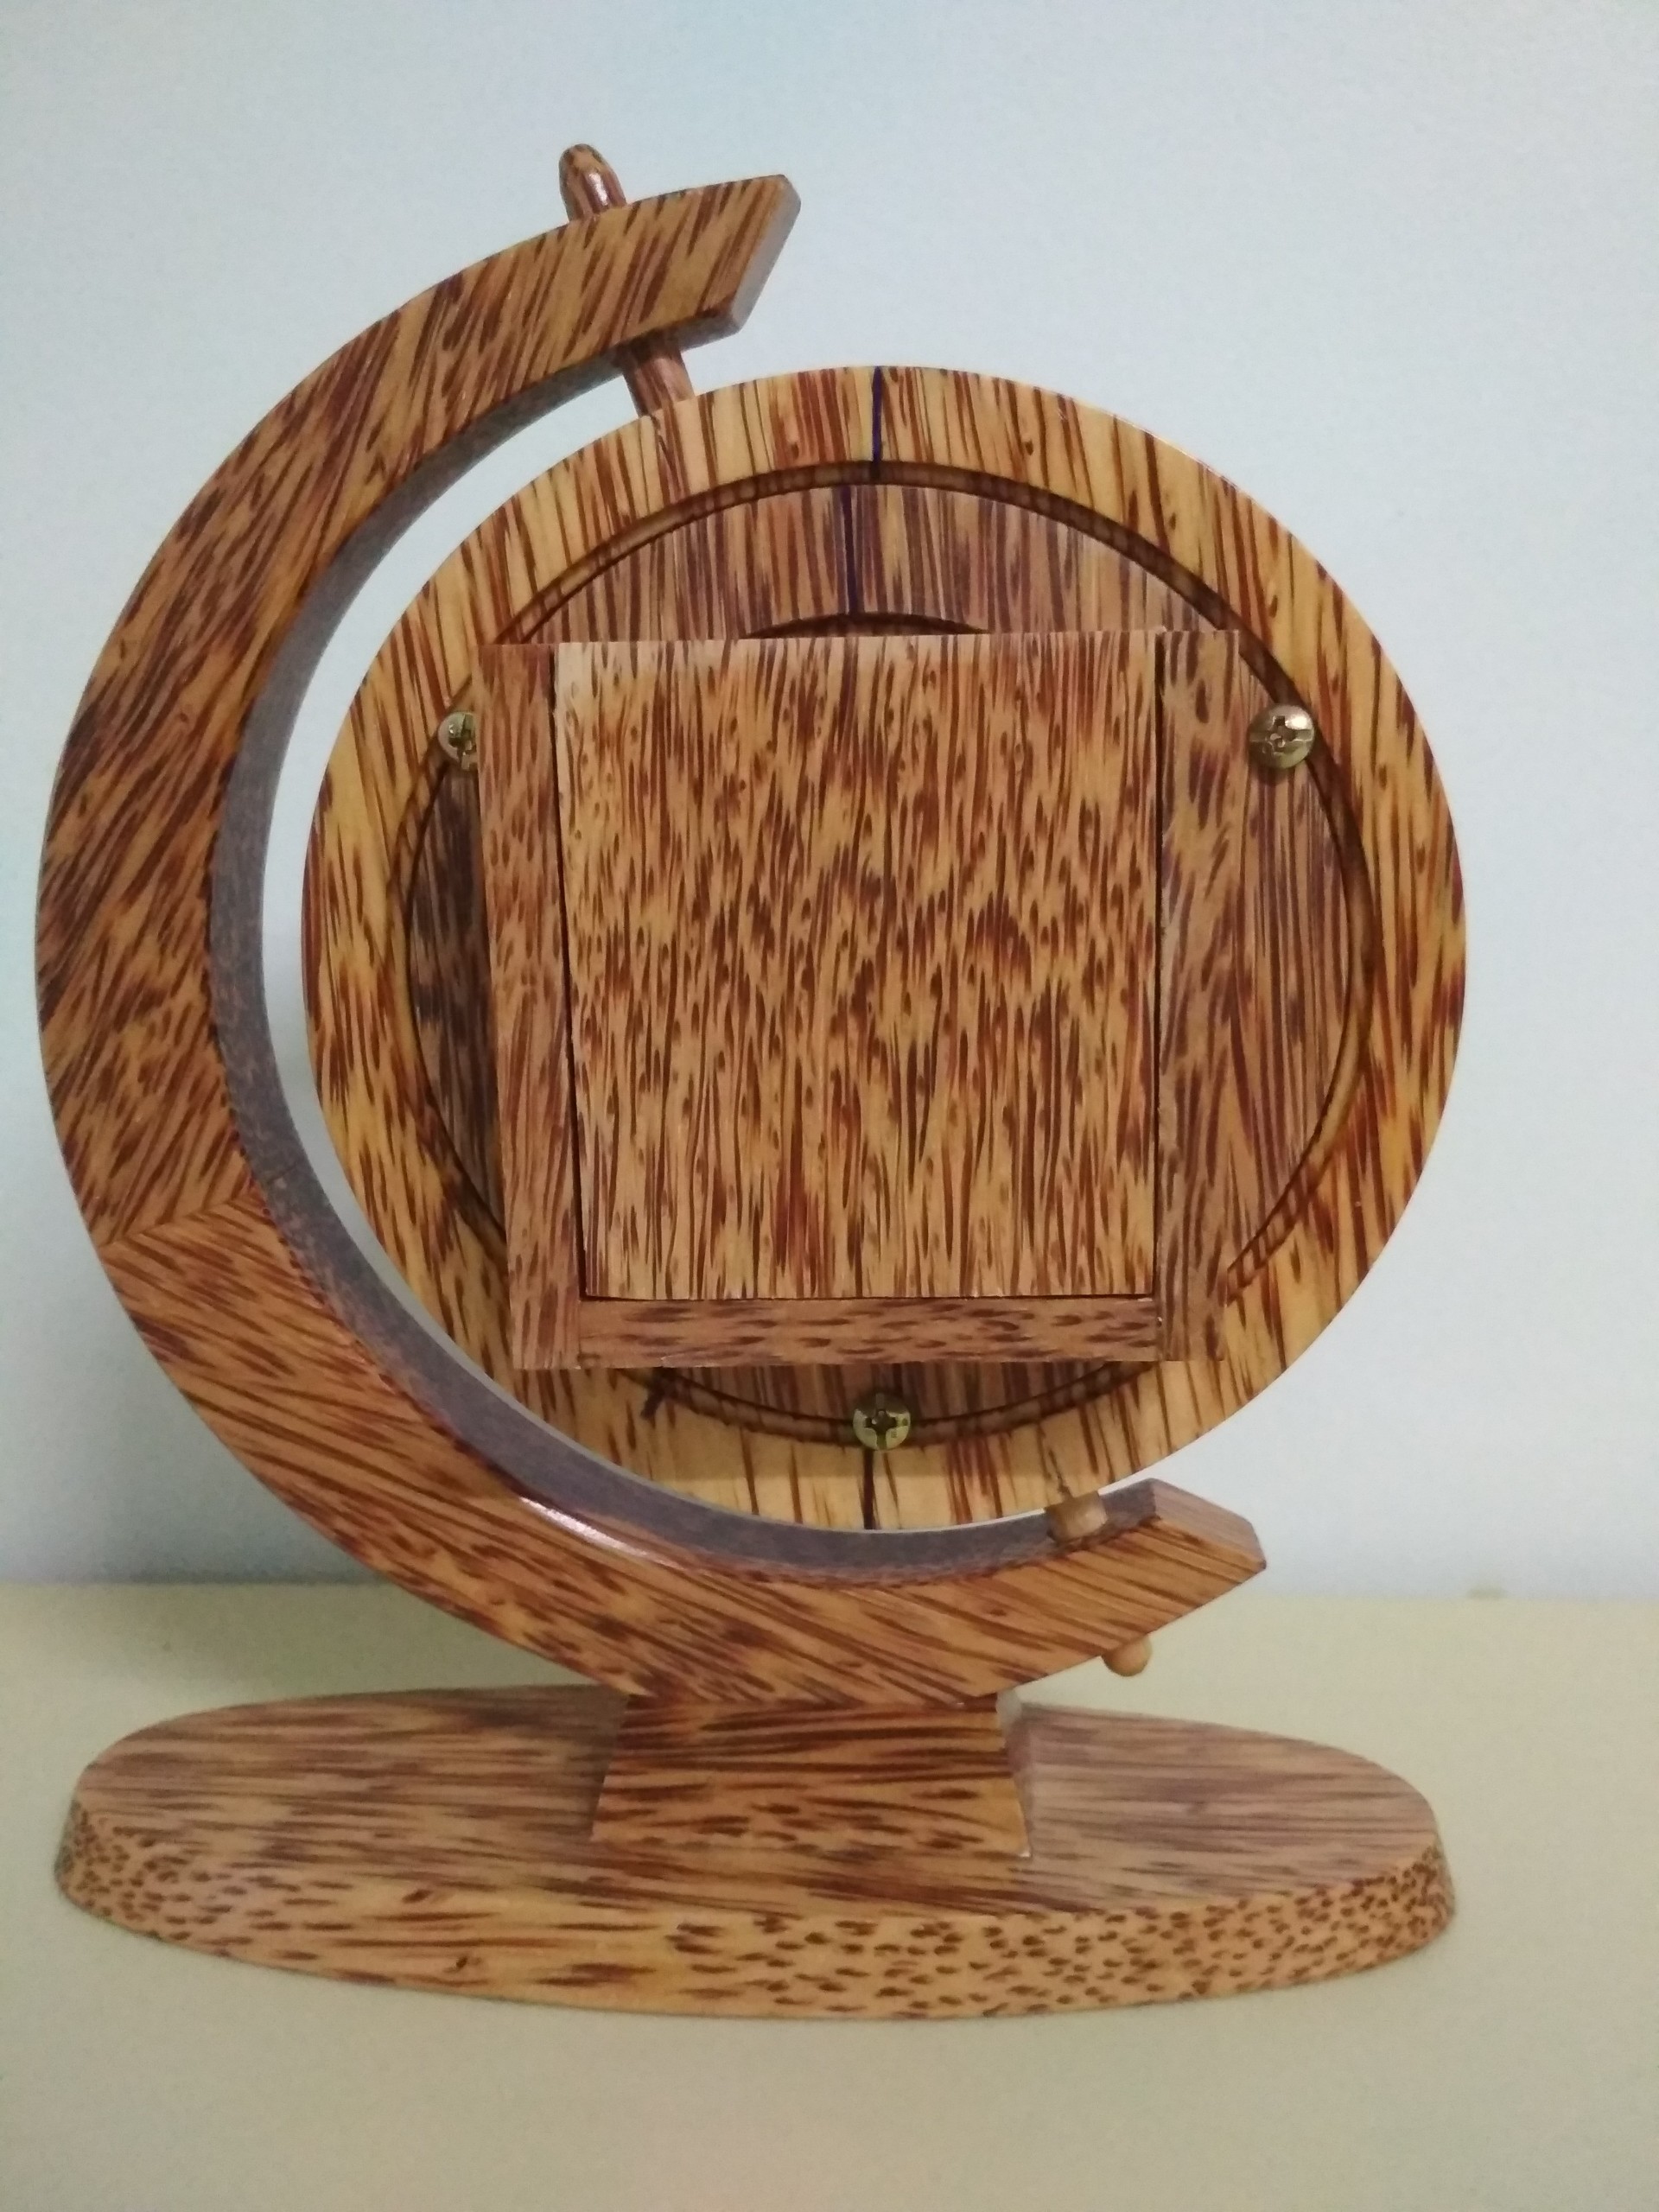 Đồng hồ quả địa cầu gỗ dừa mỹ nghệ